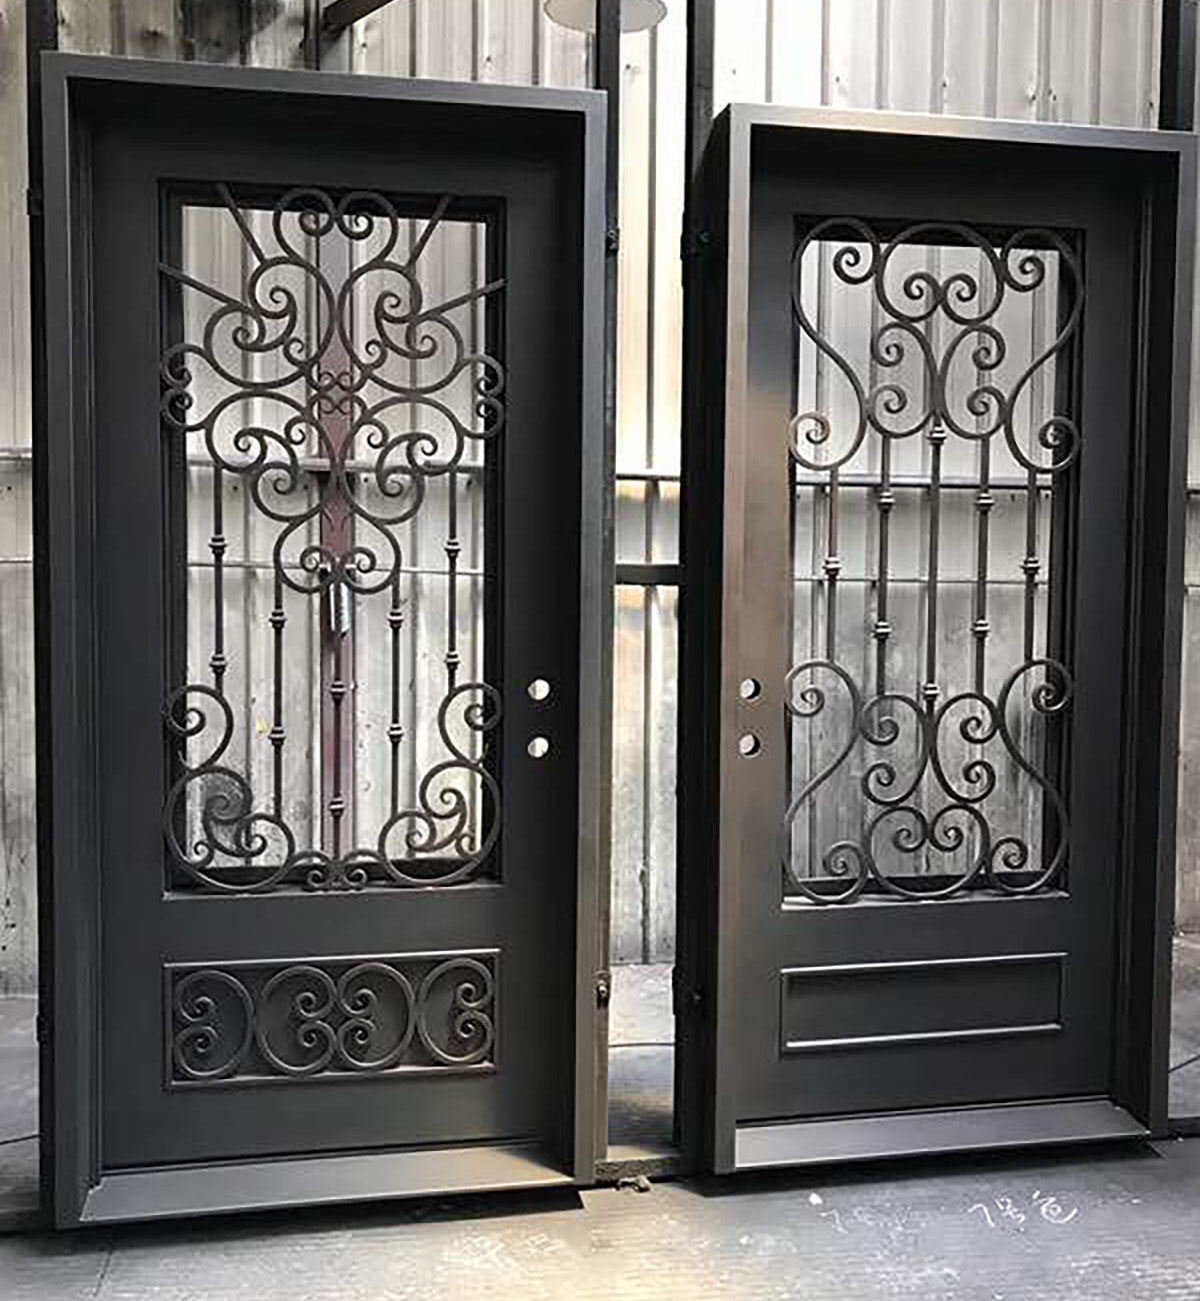 Double iron doors